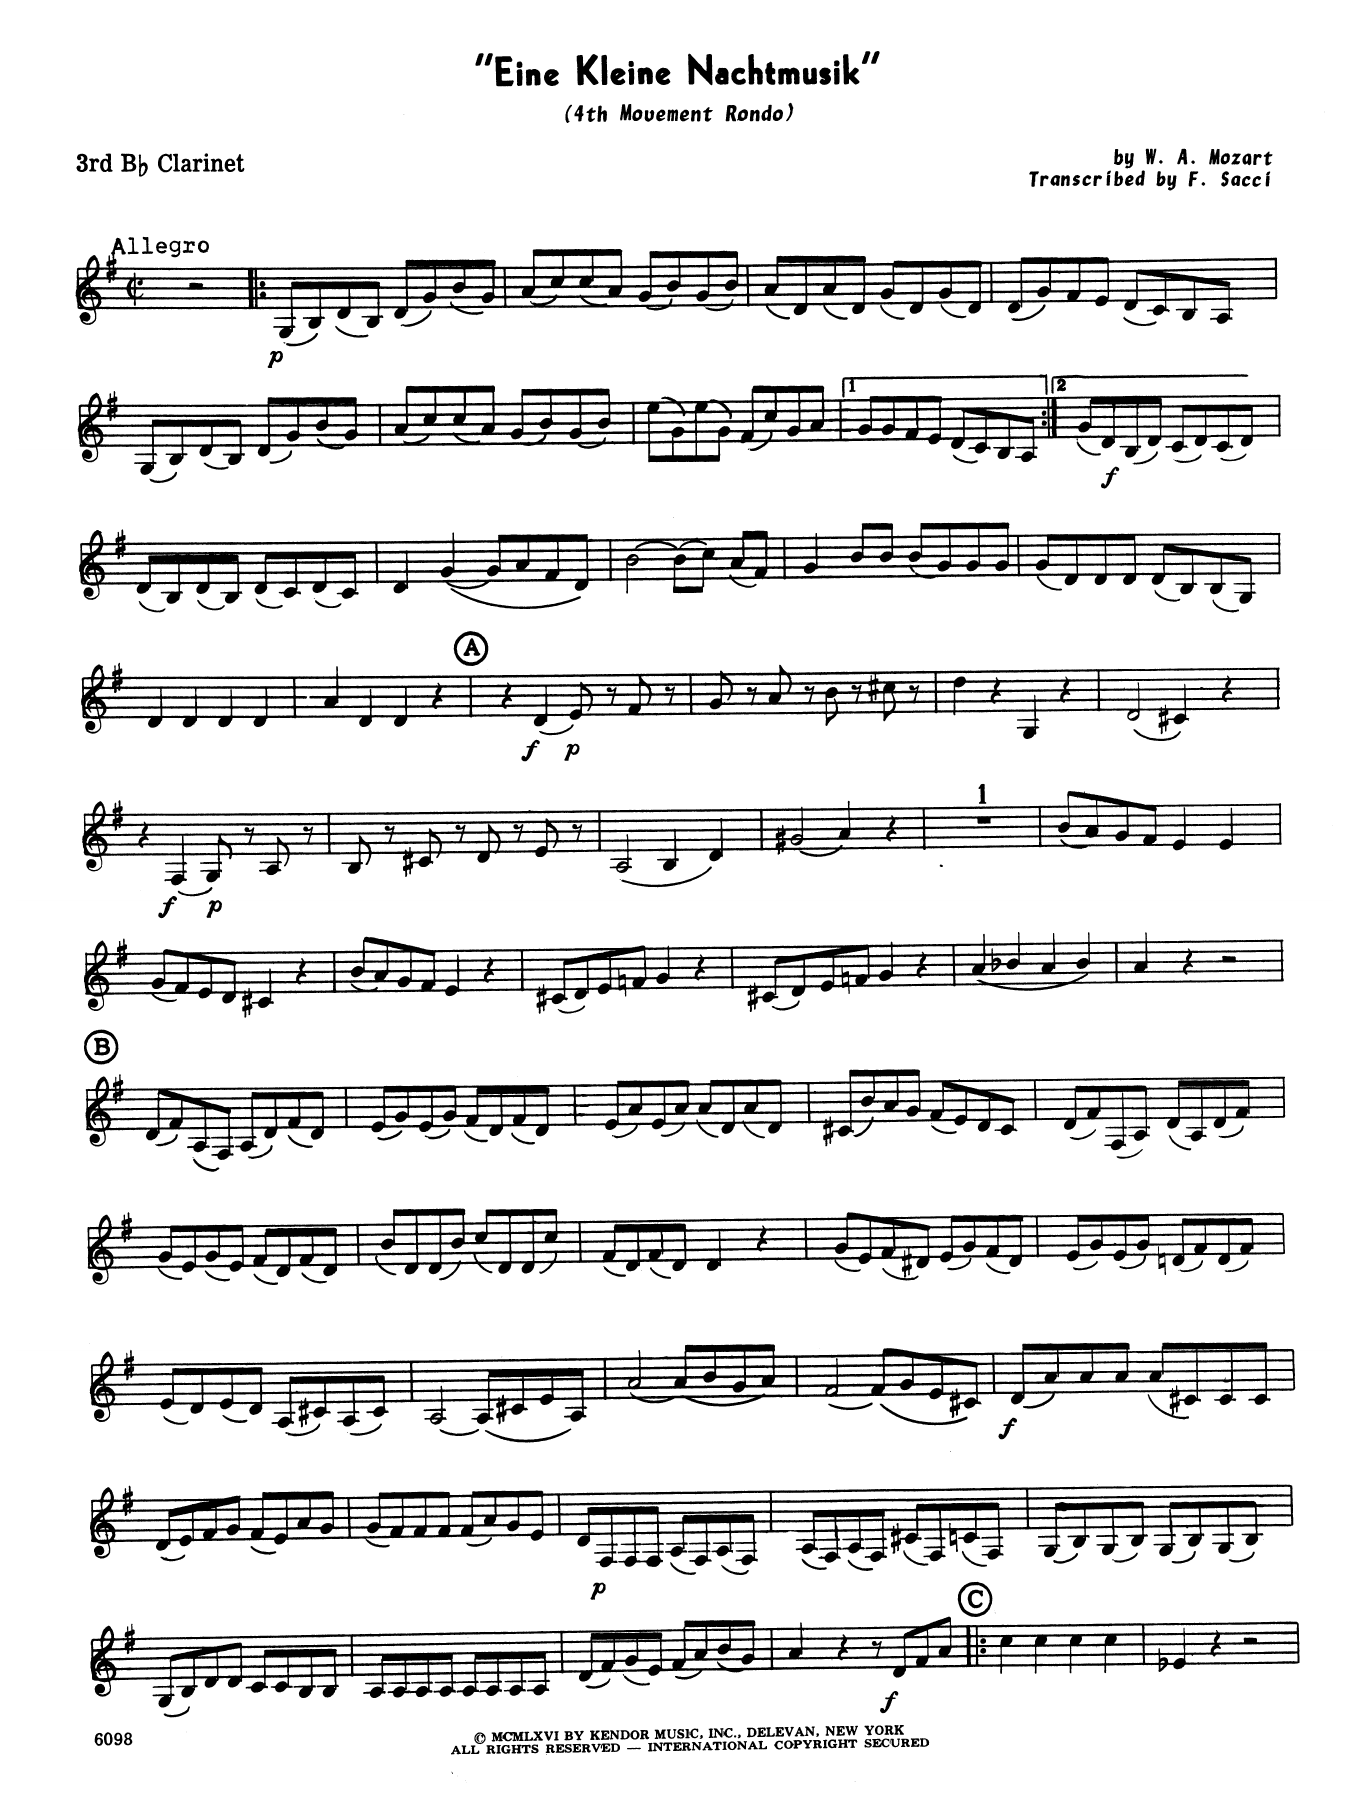 Download Wolfgang Mozart Eine Kleine Nachtmusik/Rondo (Mvt. 4) ( Sheet Music